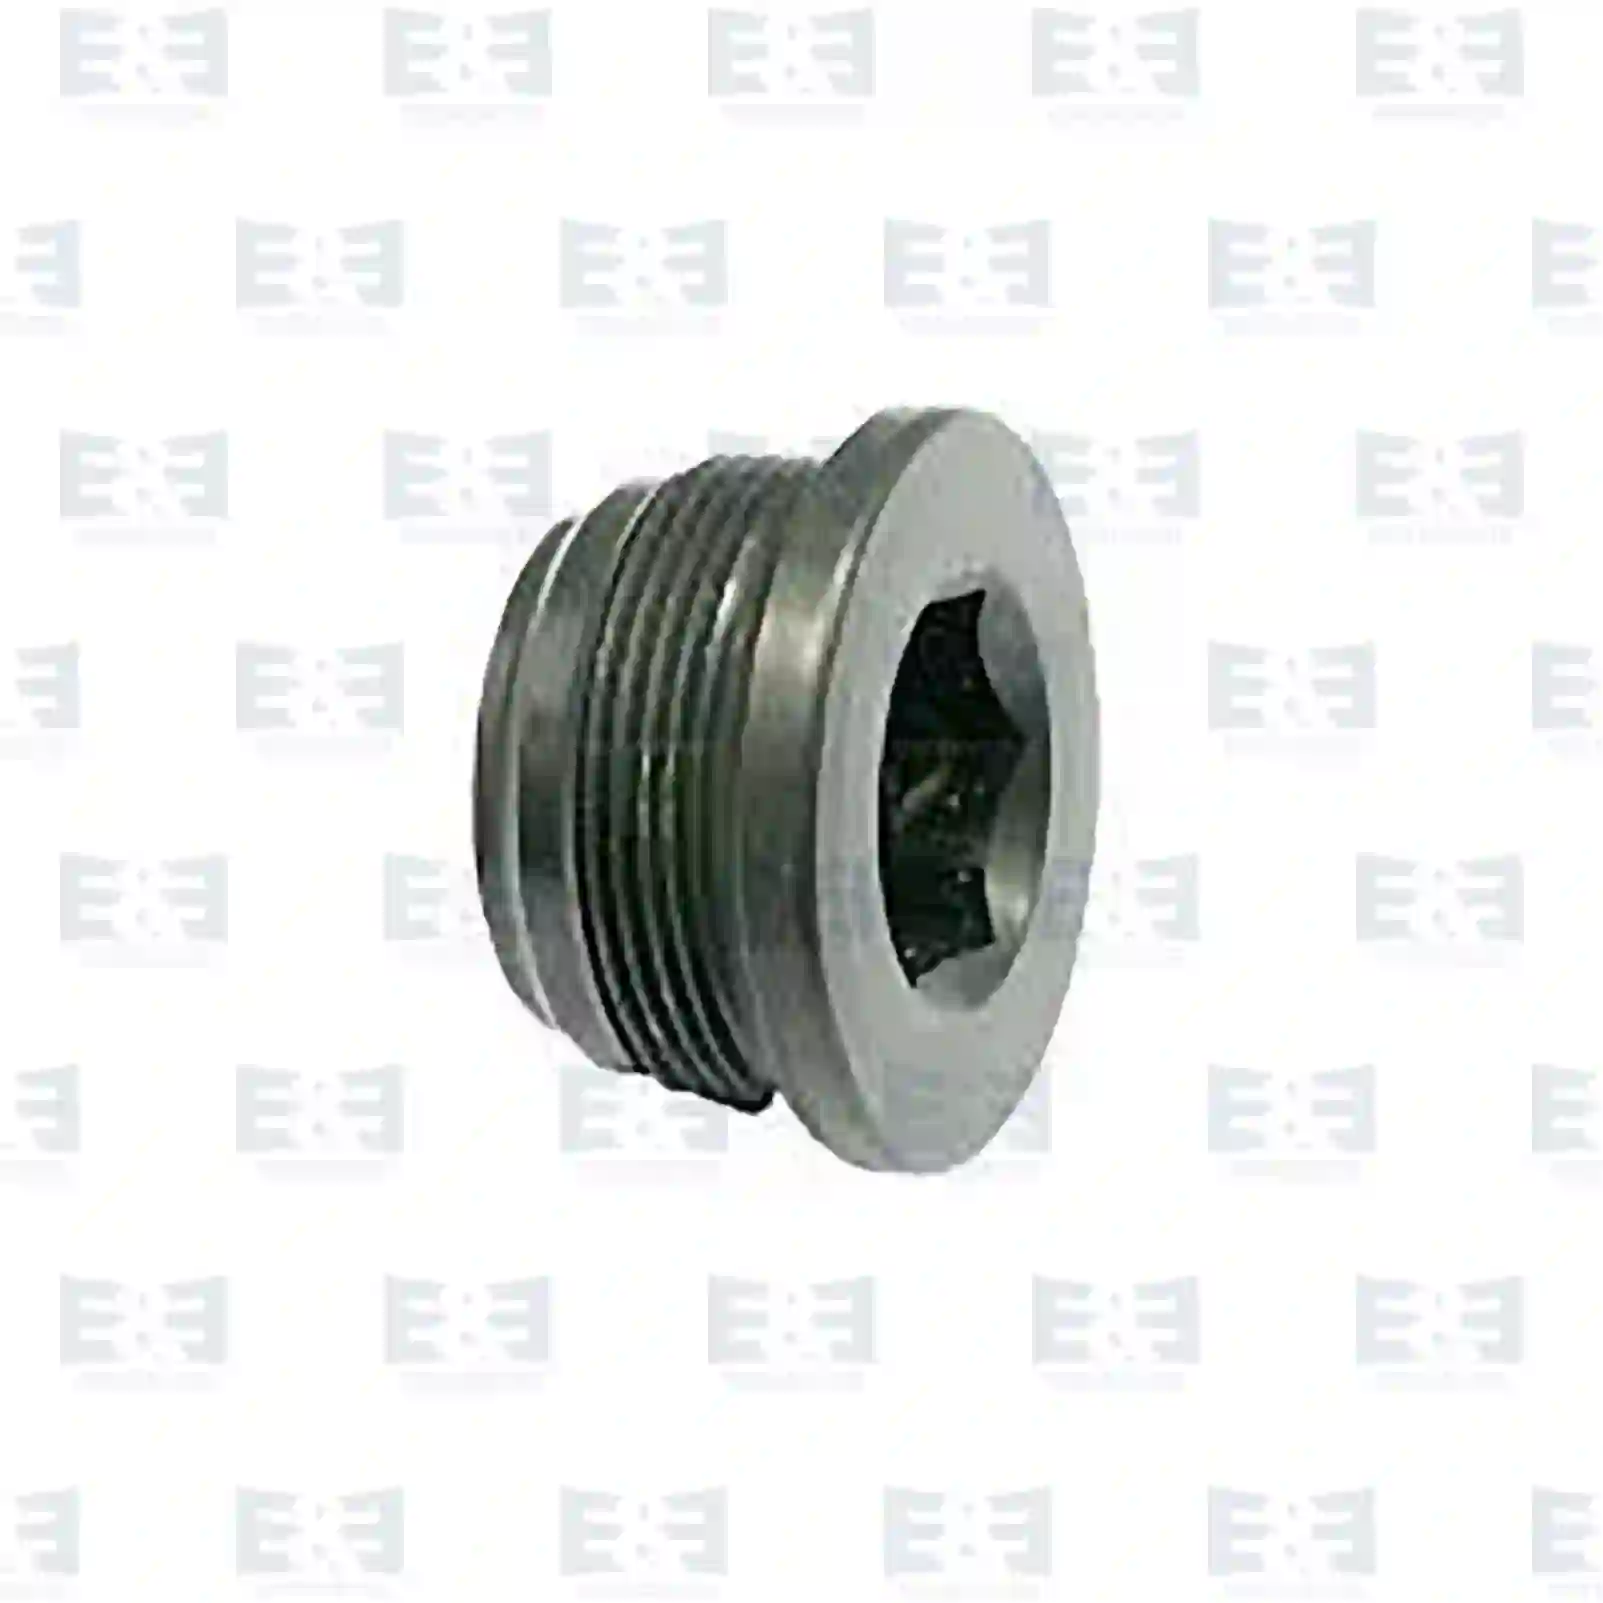  Magnetic plug || E&E Truck Spare Parts | Truck Spare Parts, Auotomotive Spare Parts